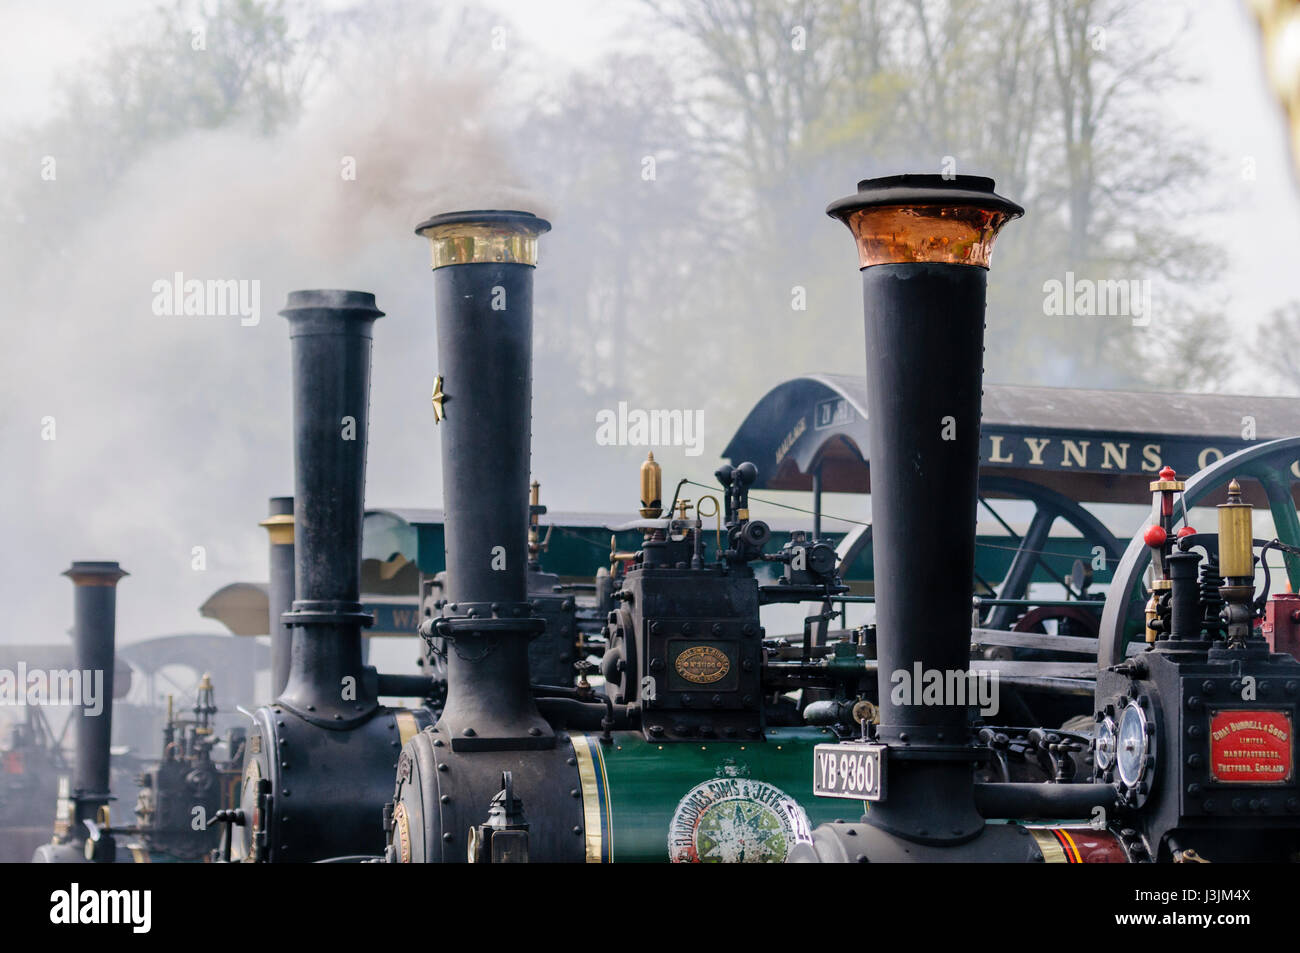 Sale humo de las chimeneas de muchos motores de tracción en una feria de vapor Foto de stock